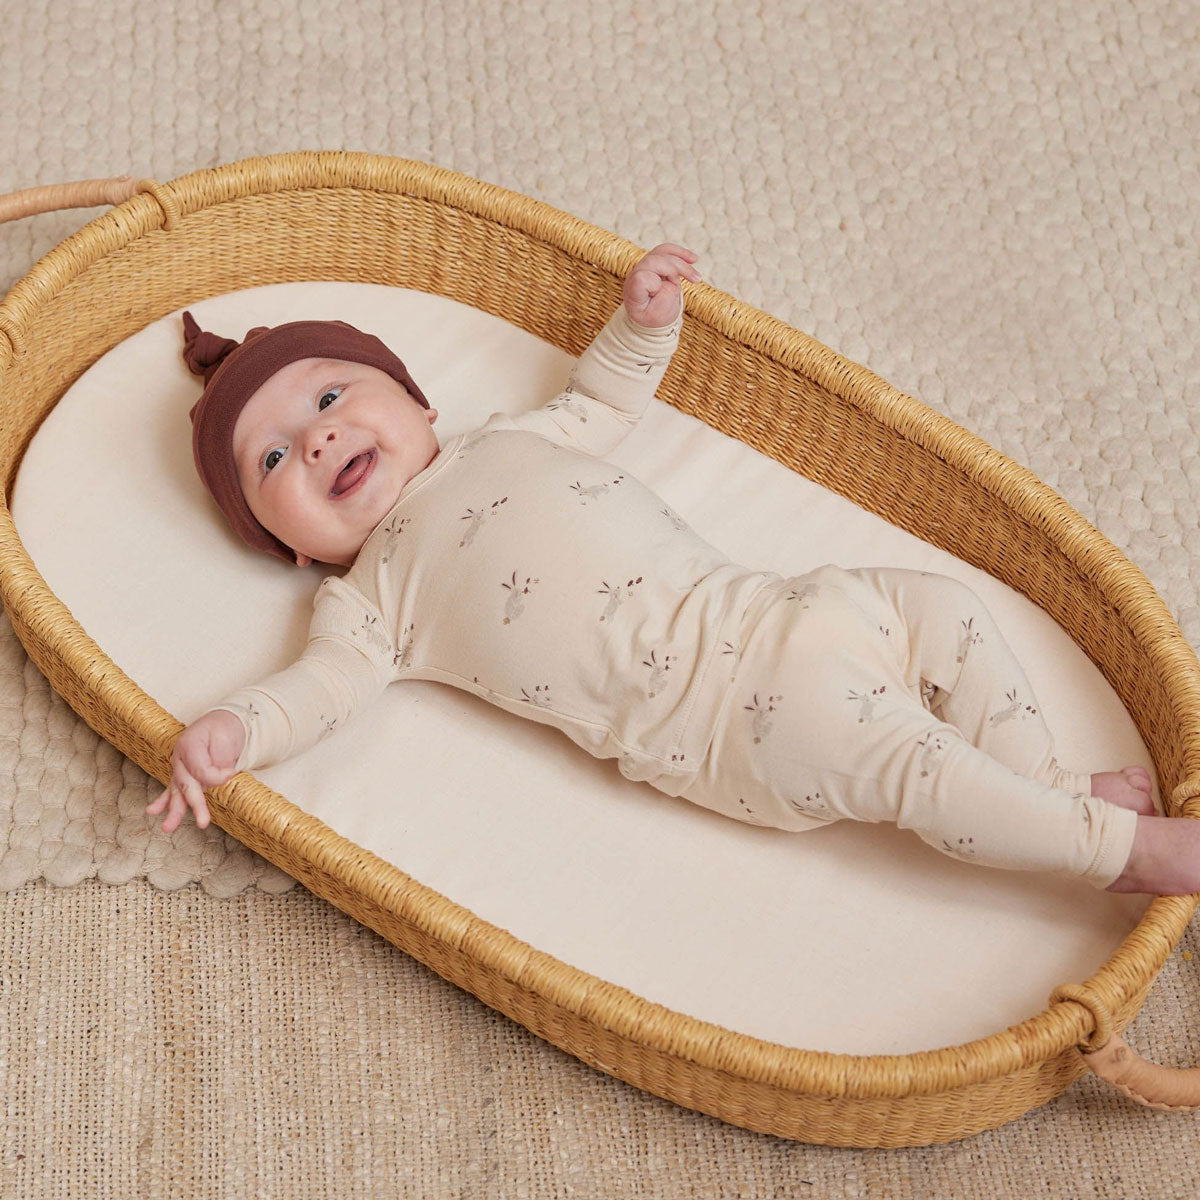 Baby wearing Quincy Mae Bamboo Pajama Set - Bunnies - Natural